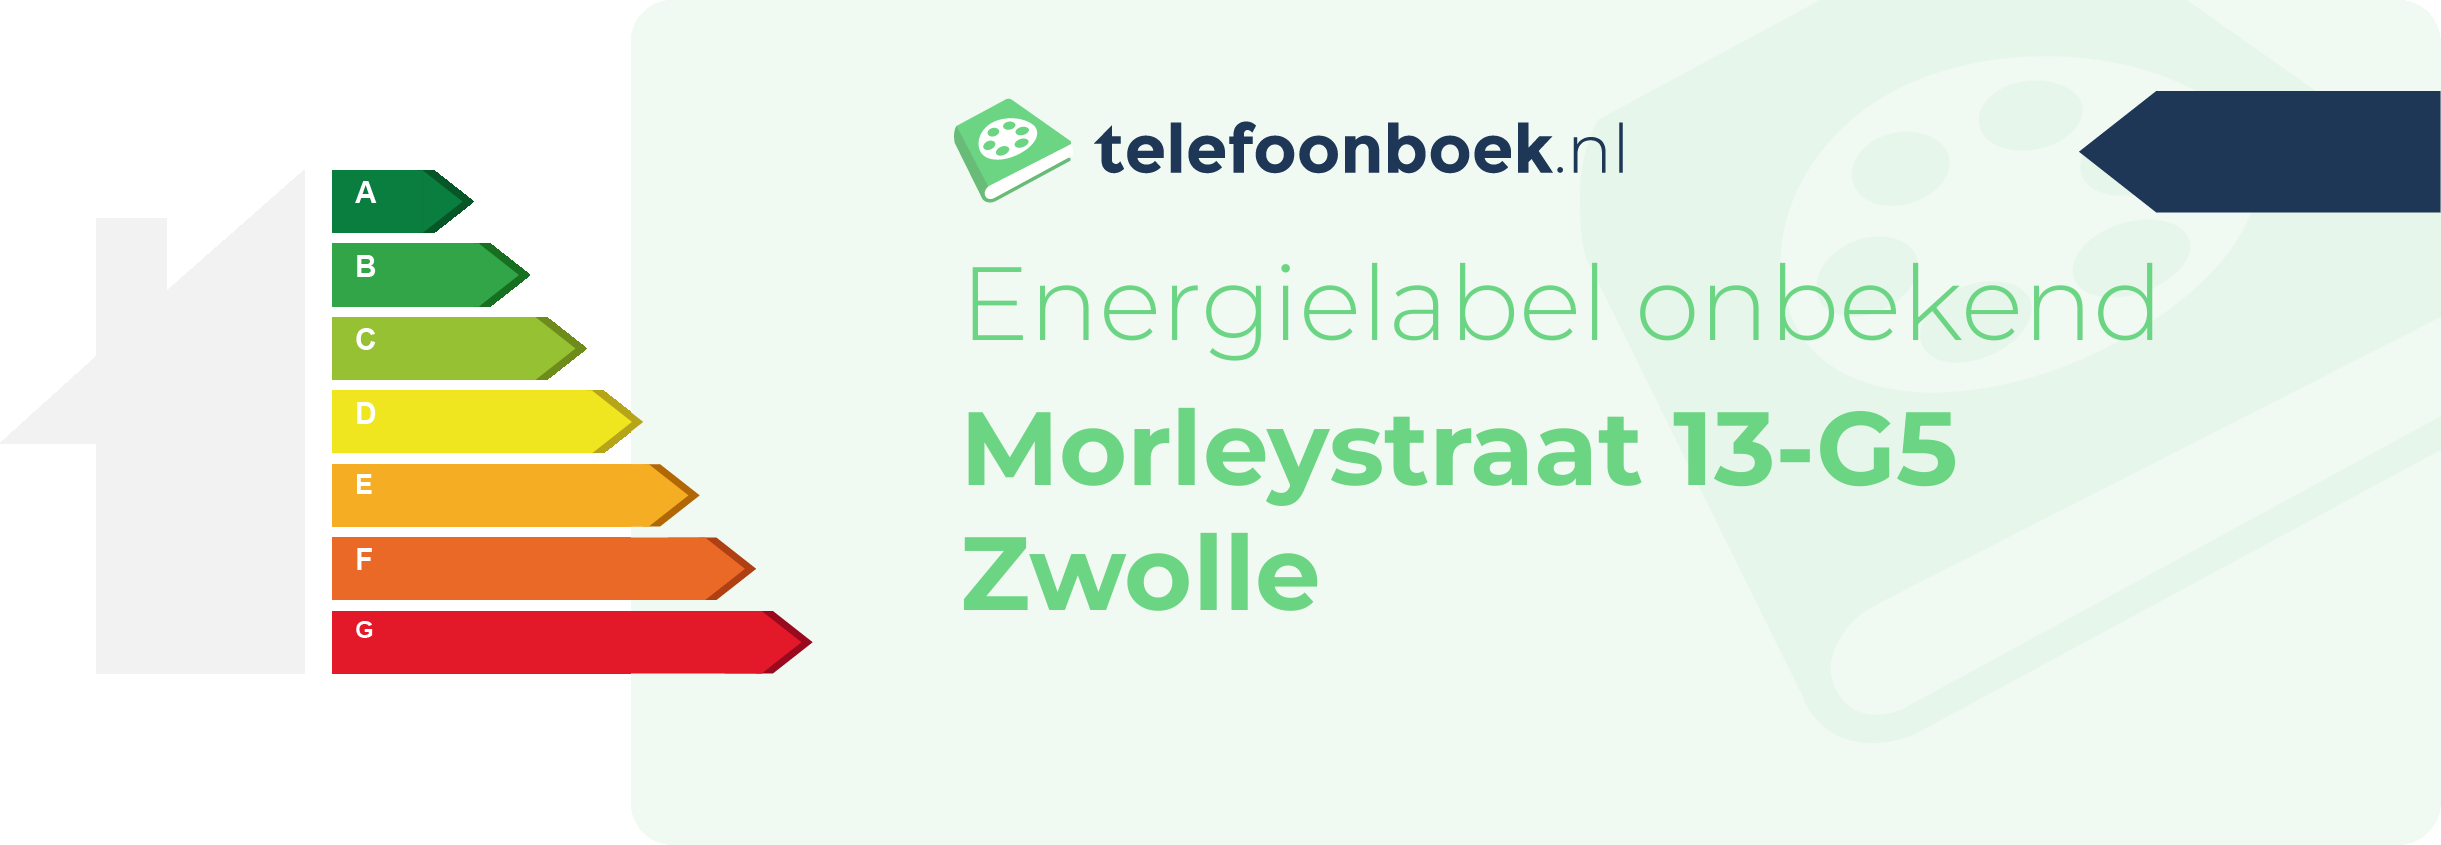 Energielabel Morleystraat 13-G5 Zwolle